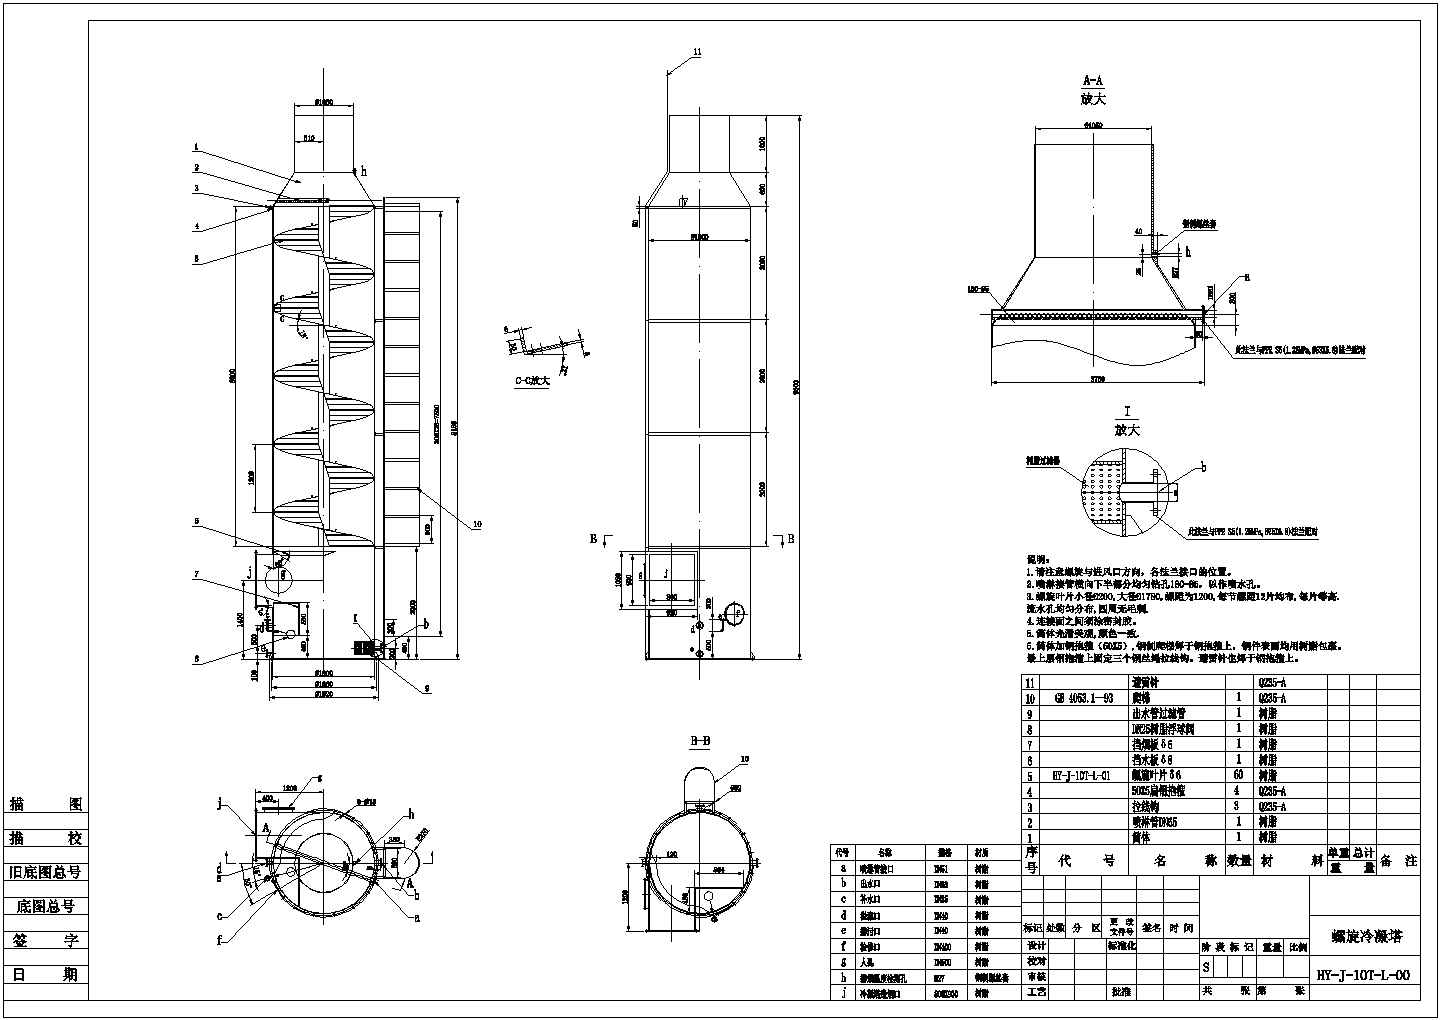 锅炉节能脱硫改造工程原理及设备图